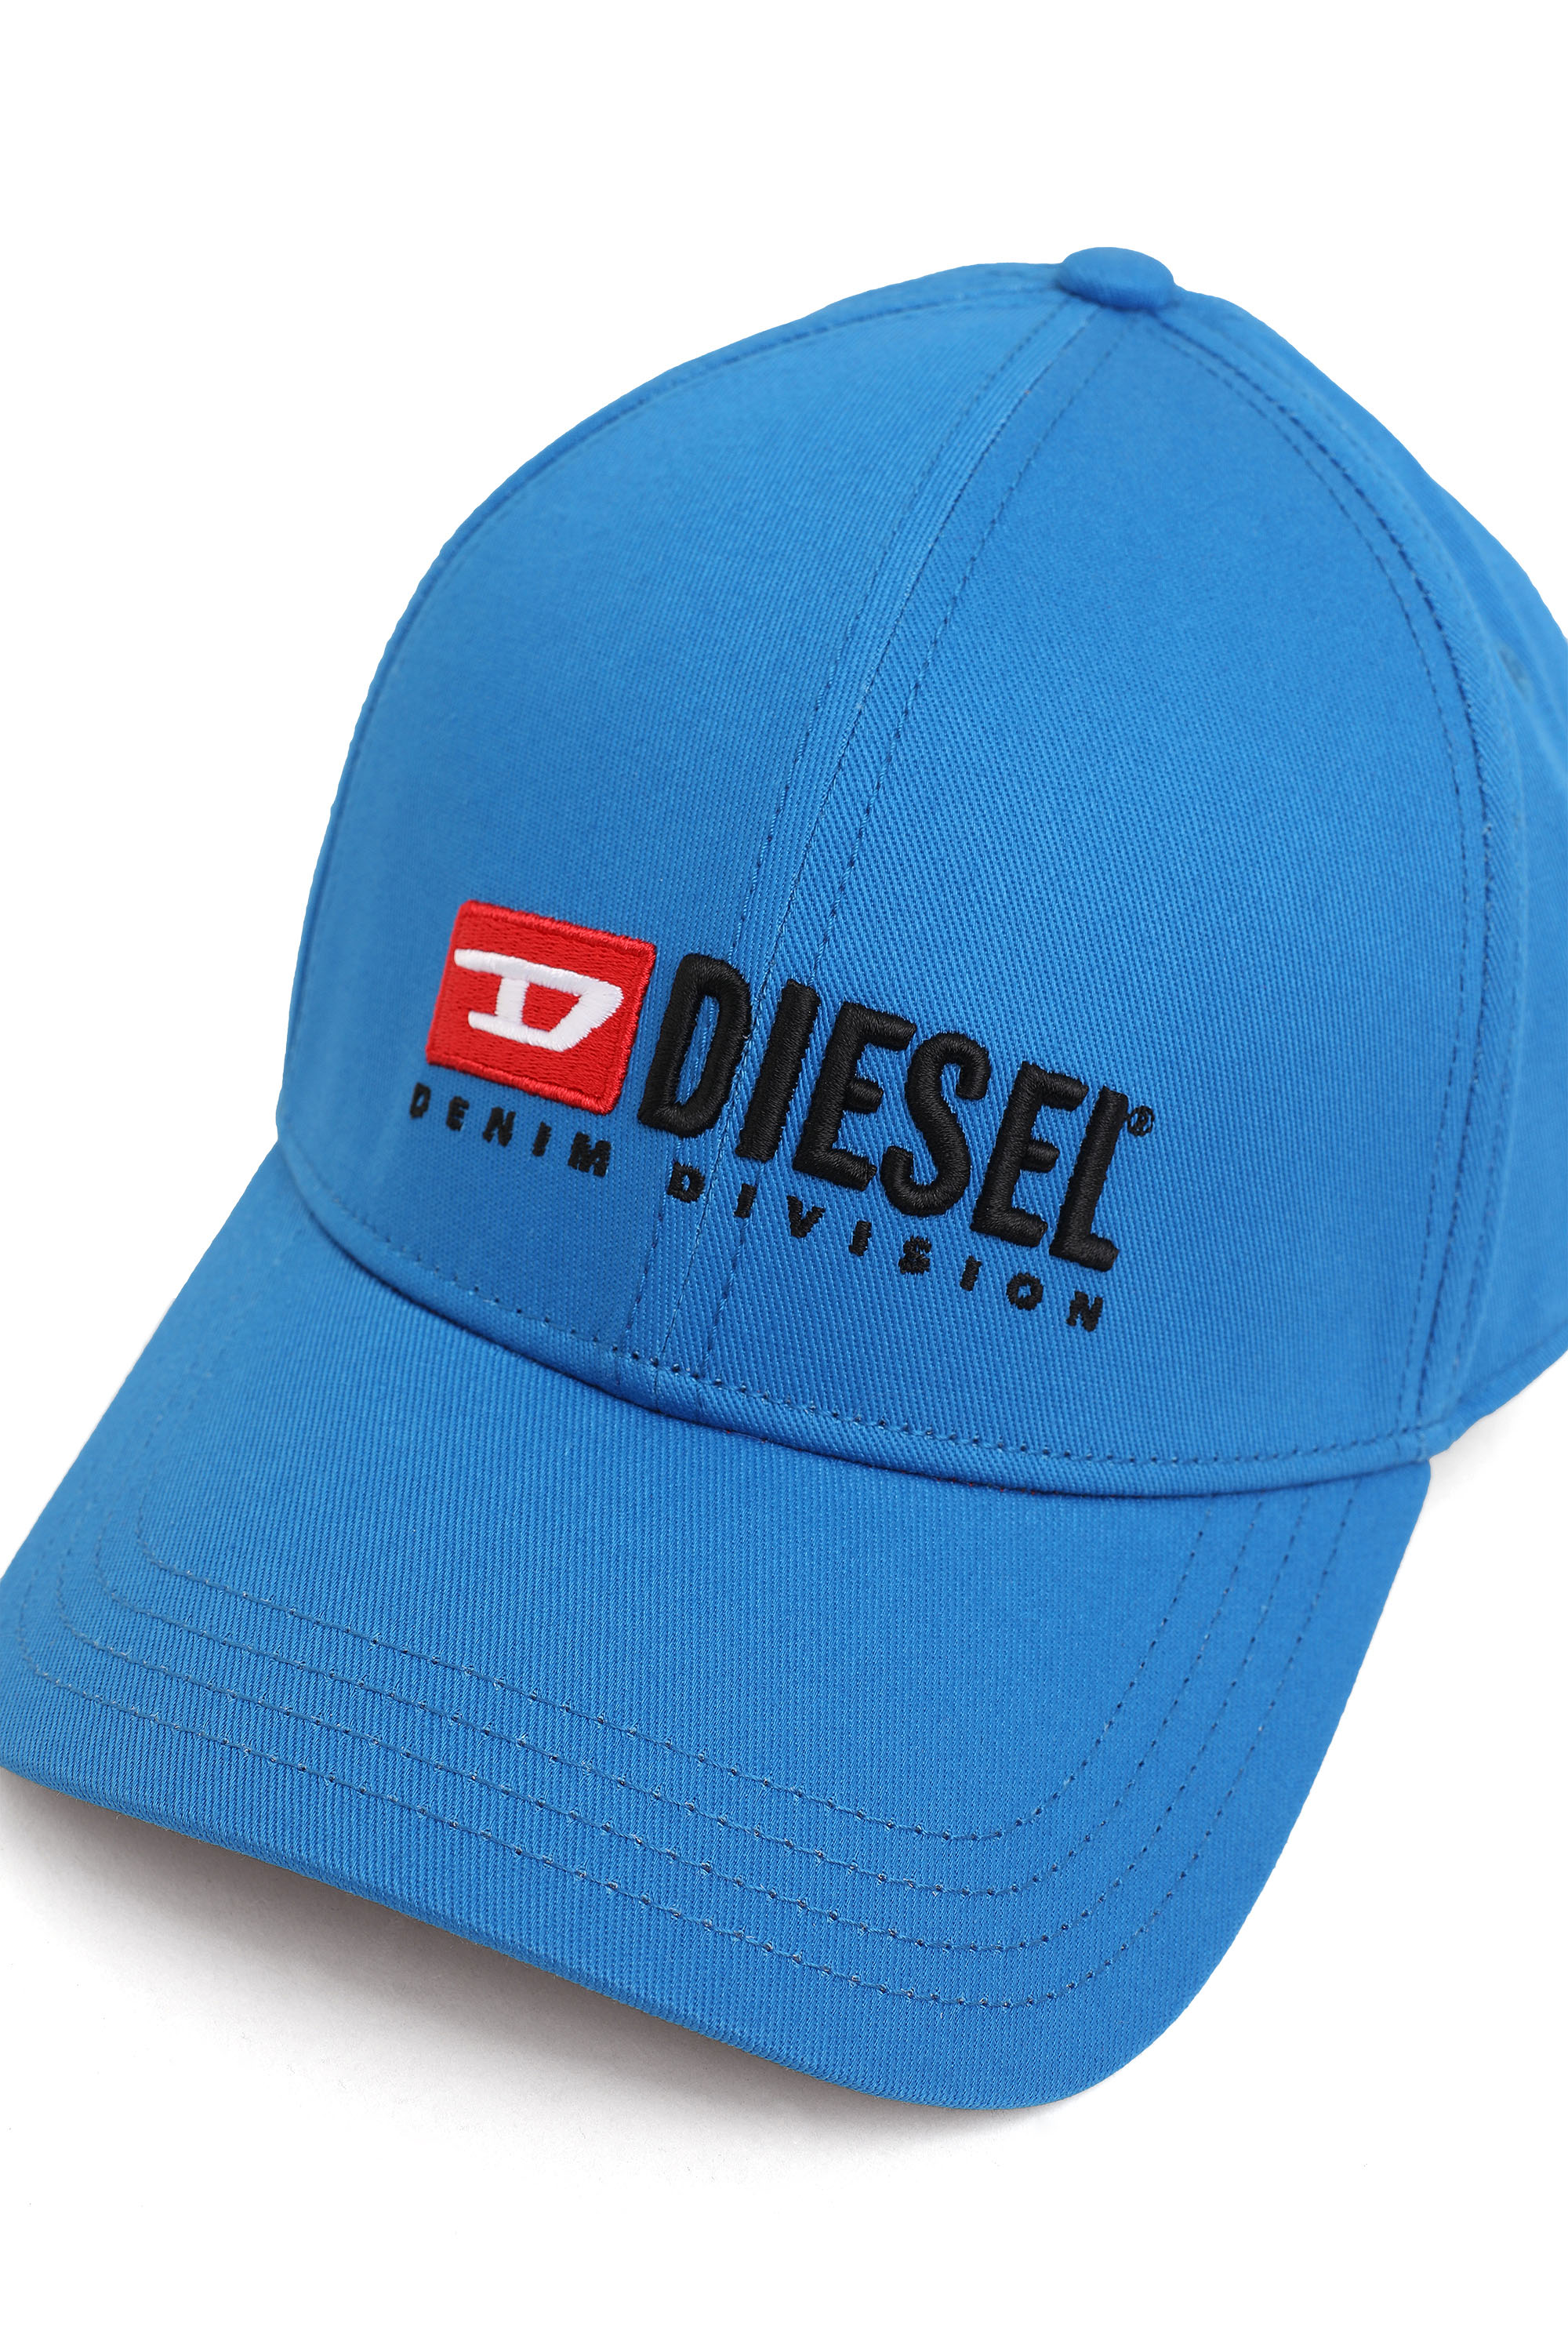 Diesel - CORRY-DIV, Blau - Image 3